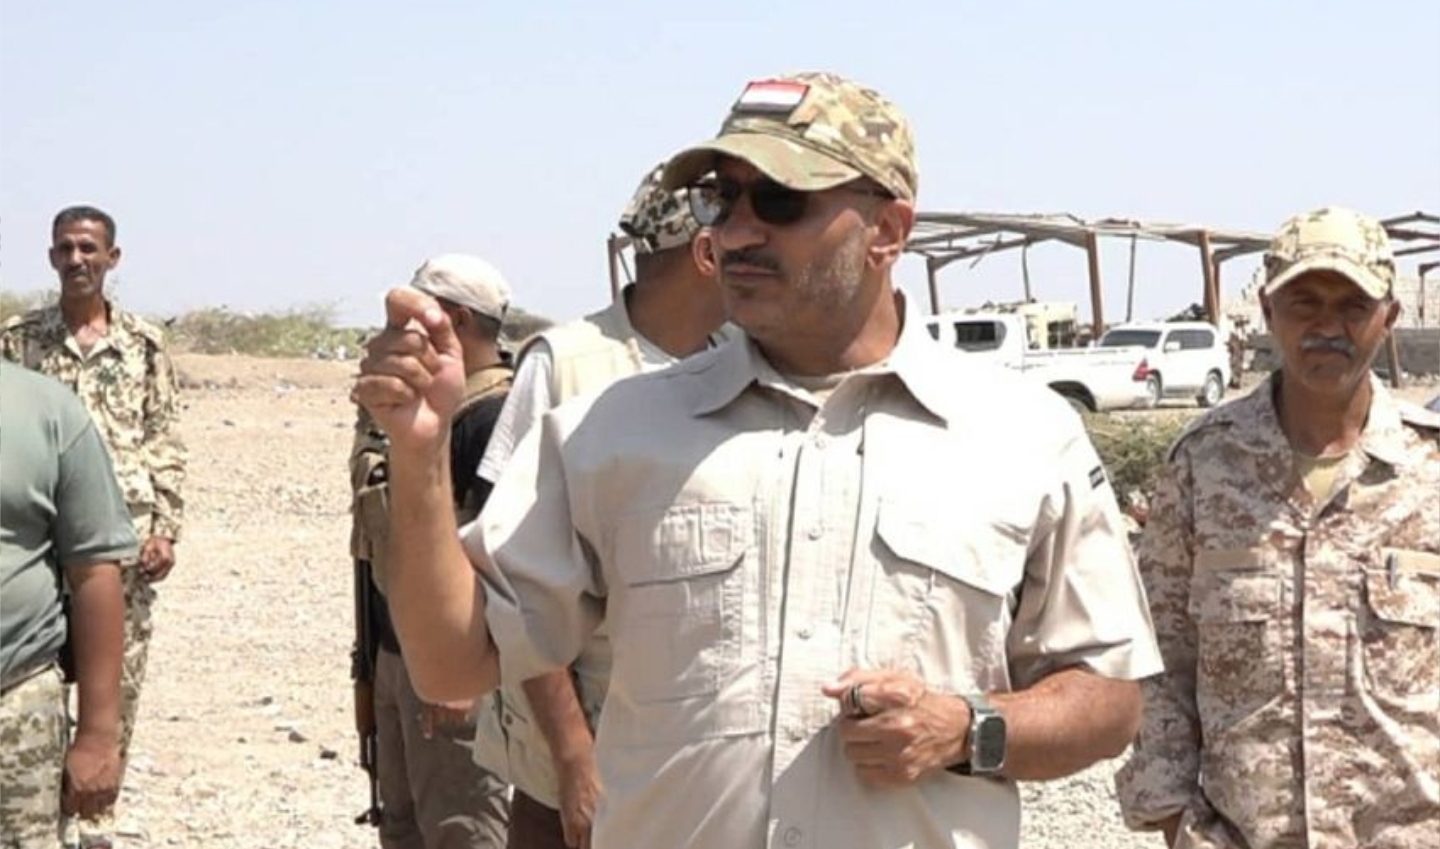 طارق صالح: الاستعداد للحرب الطريق الثابت لفرض السلام 